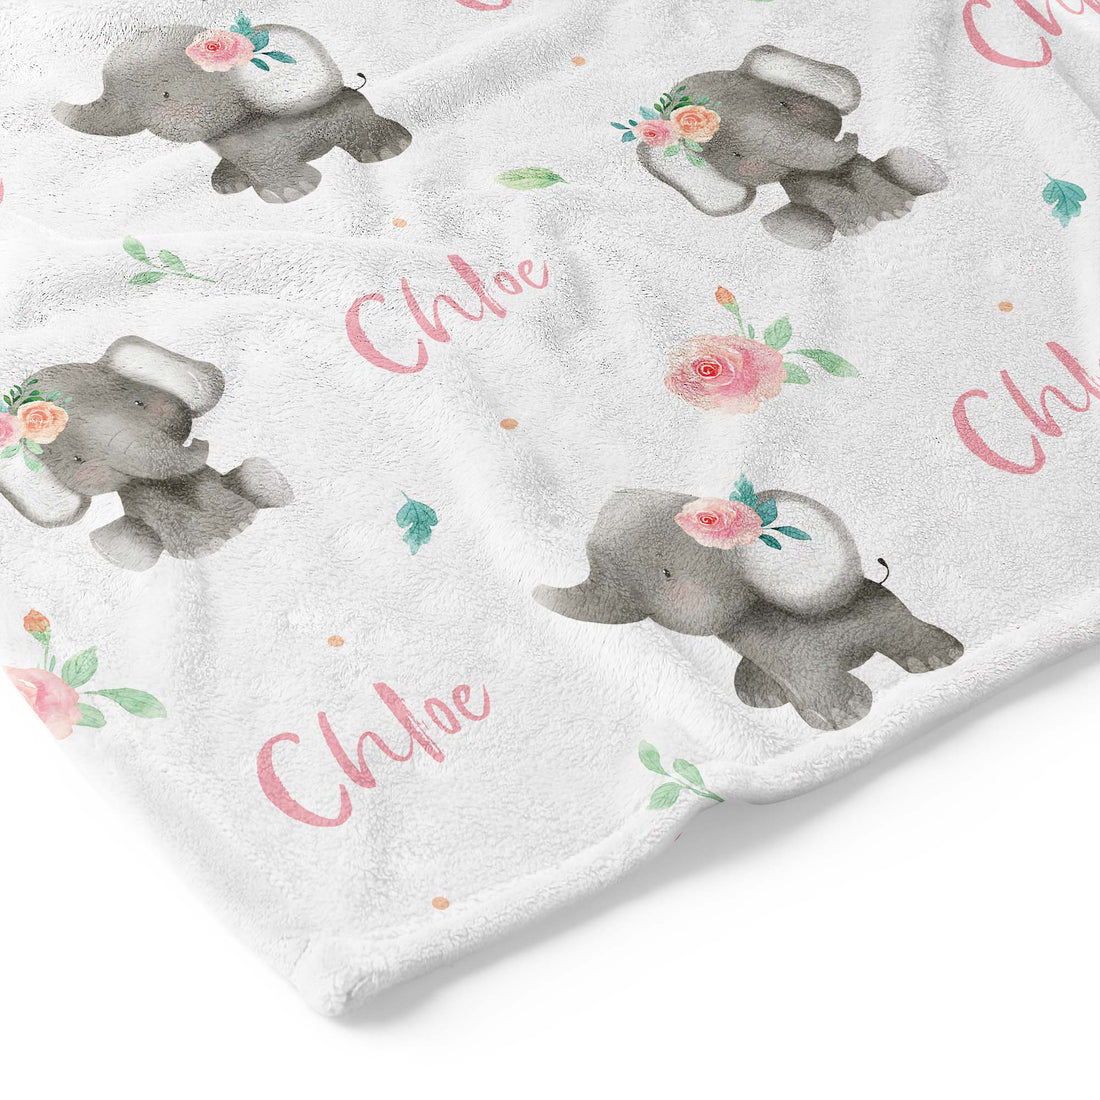 Baby Elephants (Pink) - Personalised Keepsake Blanket